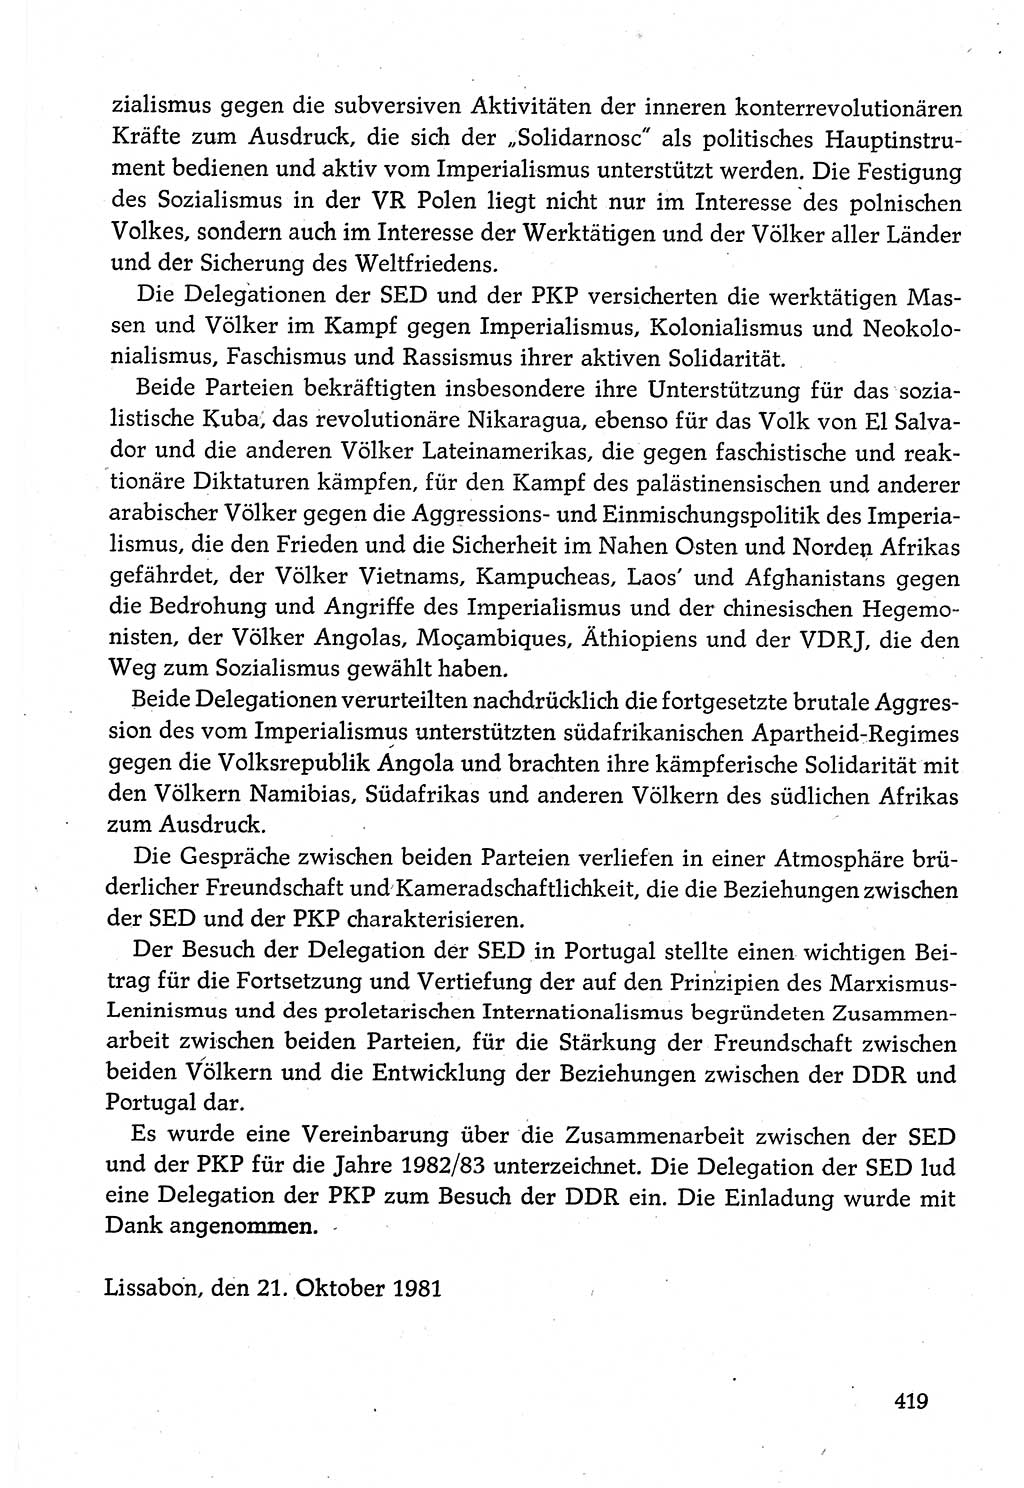 Dokumente der Sozialistischen Einheitspartei Deutschlands (SED) [Deutsche Demokratische Republik (DDR)] 1980-1981, Seite 419 (Dok. SED DDR 1980-1981, S. 419)